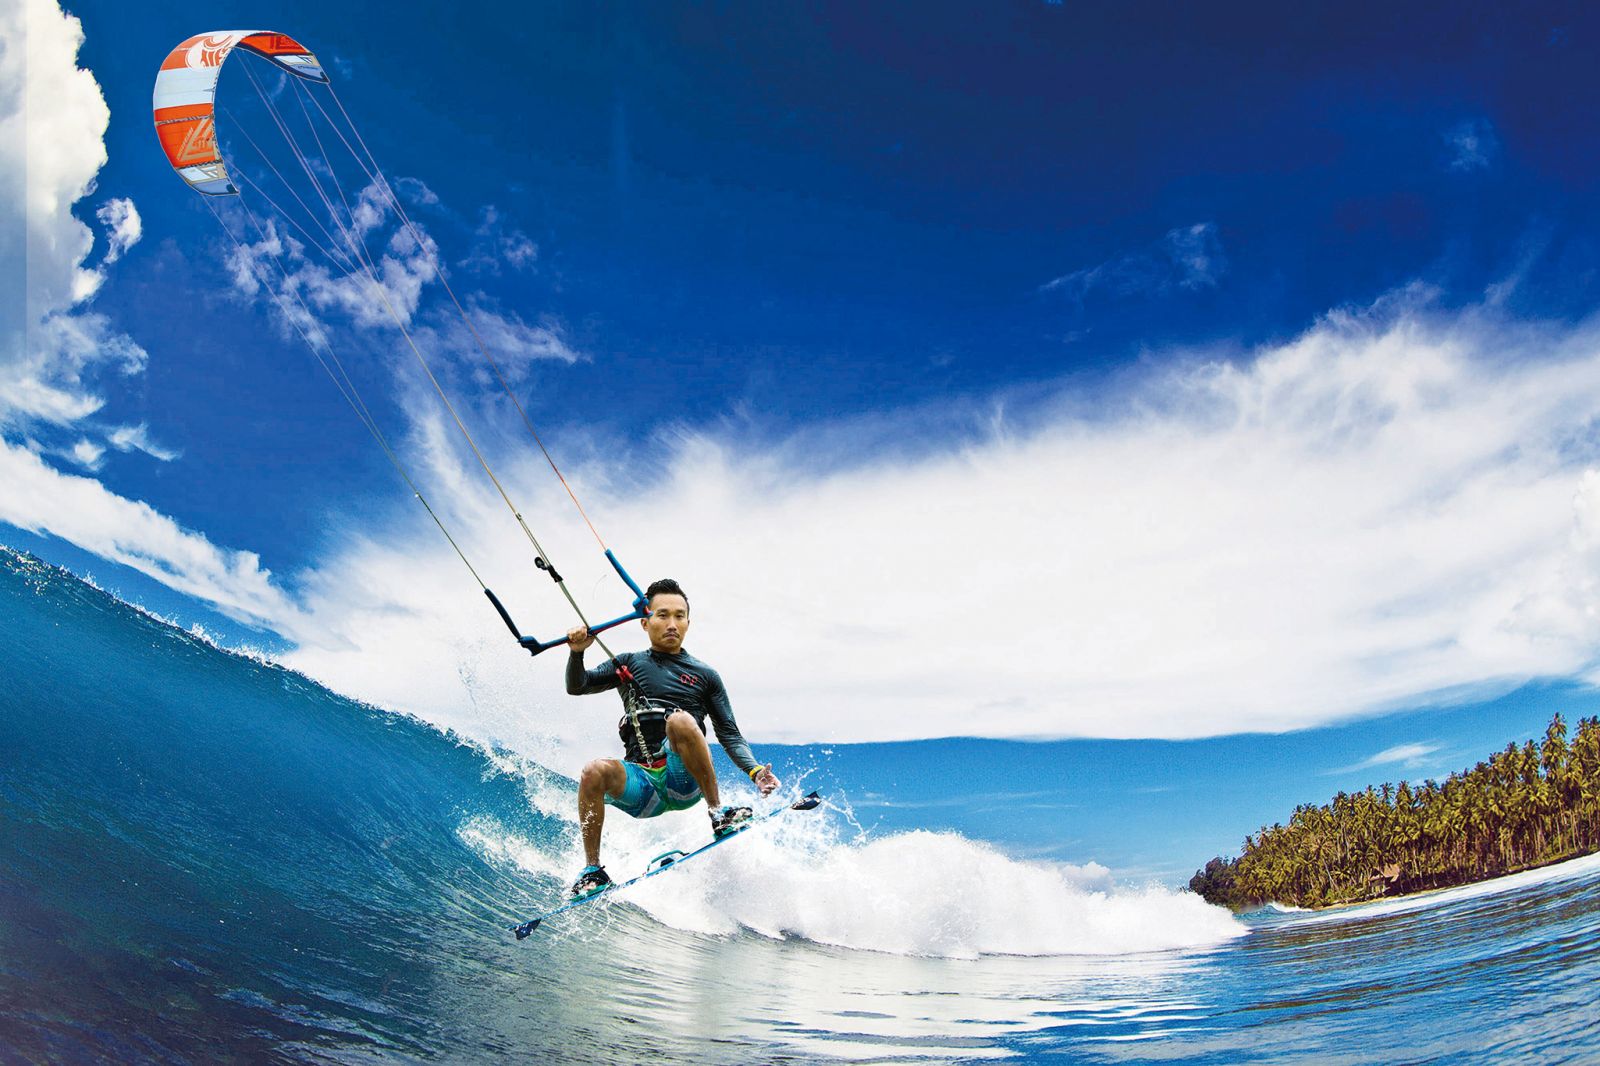 集多種不同刺激體驗一身風箏滑浪玩盡海空- 澳門力報官網